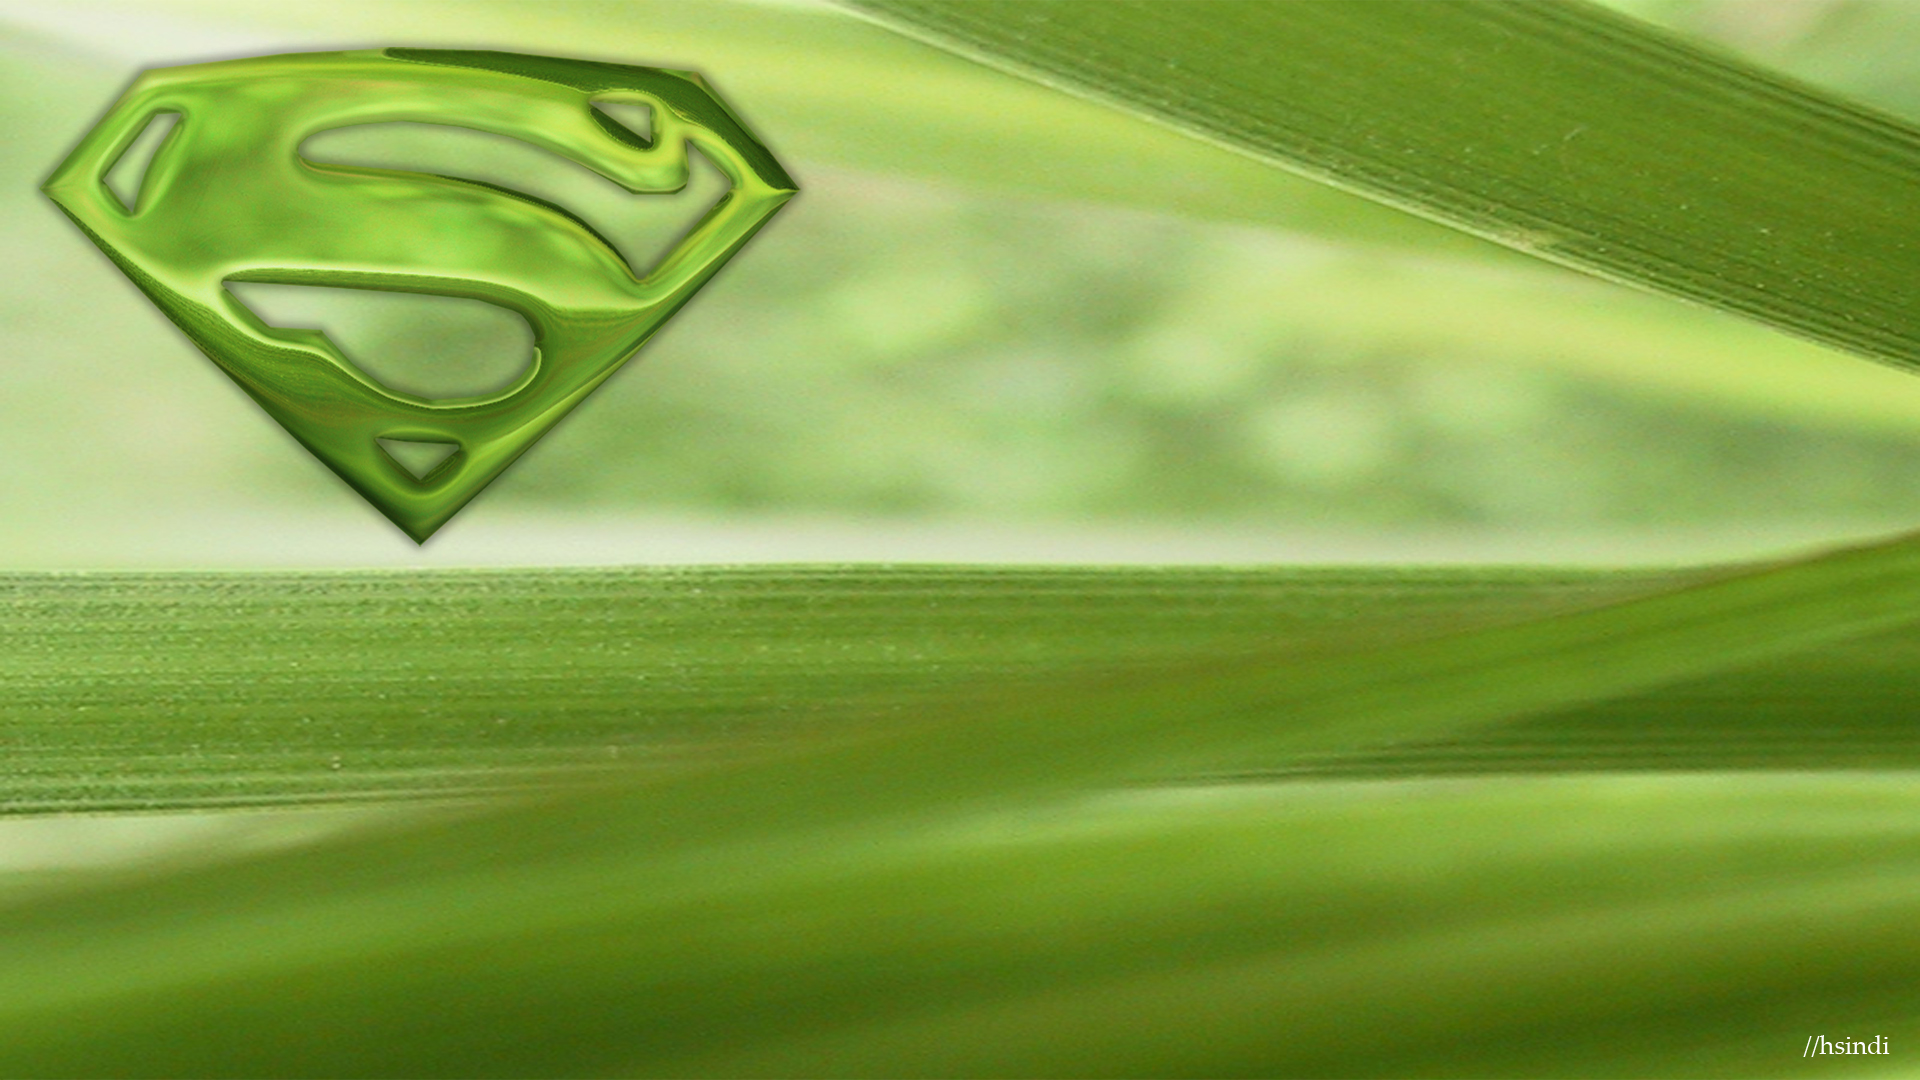 Descarga gratuita de fondo de pantalla para móvil de Superhombre, Logotipo De Superman, Historietas.